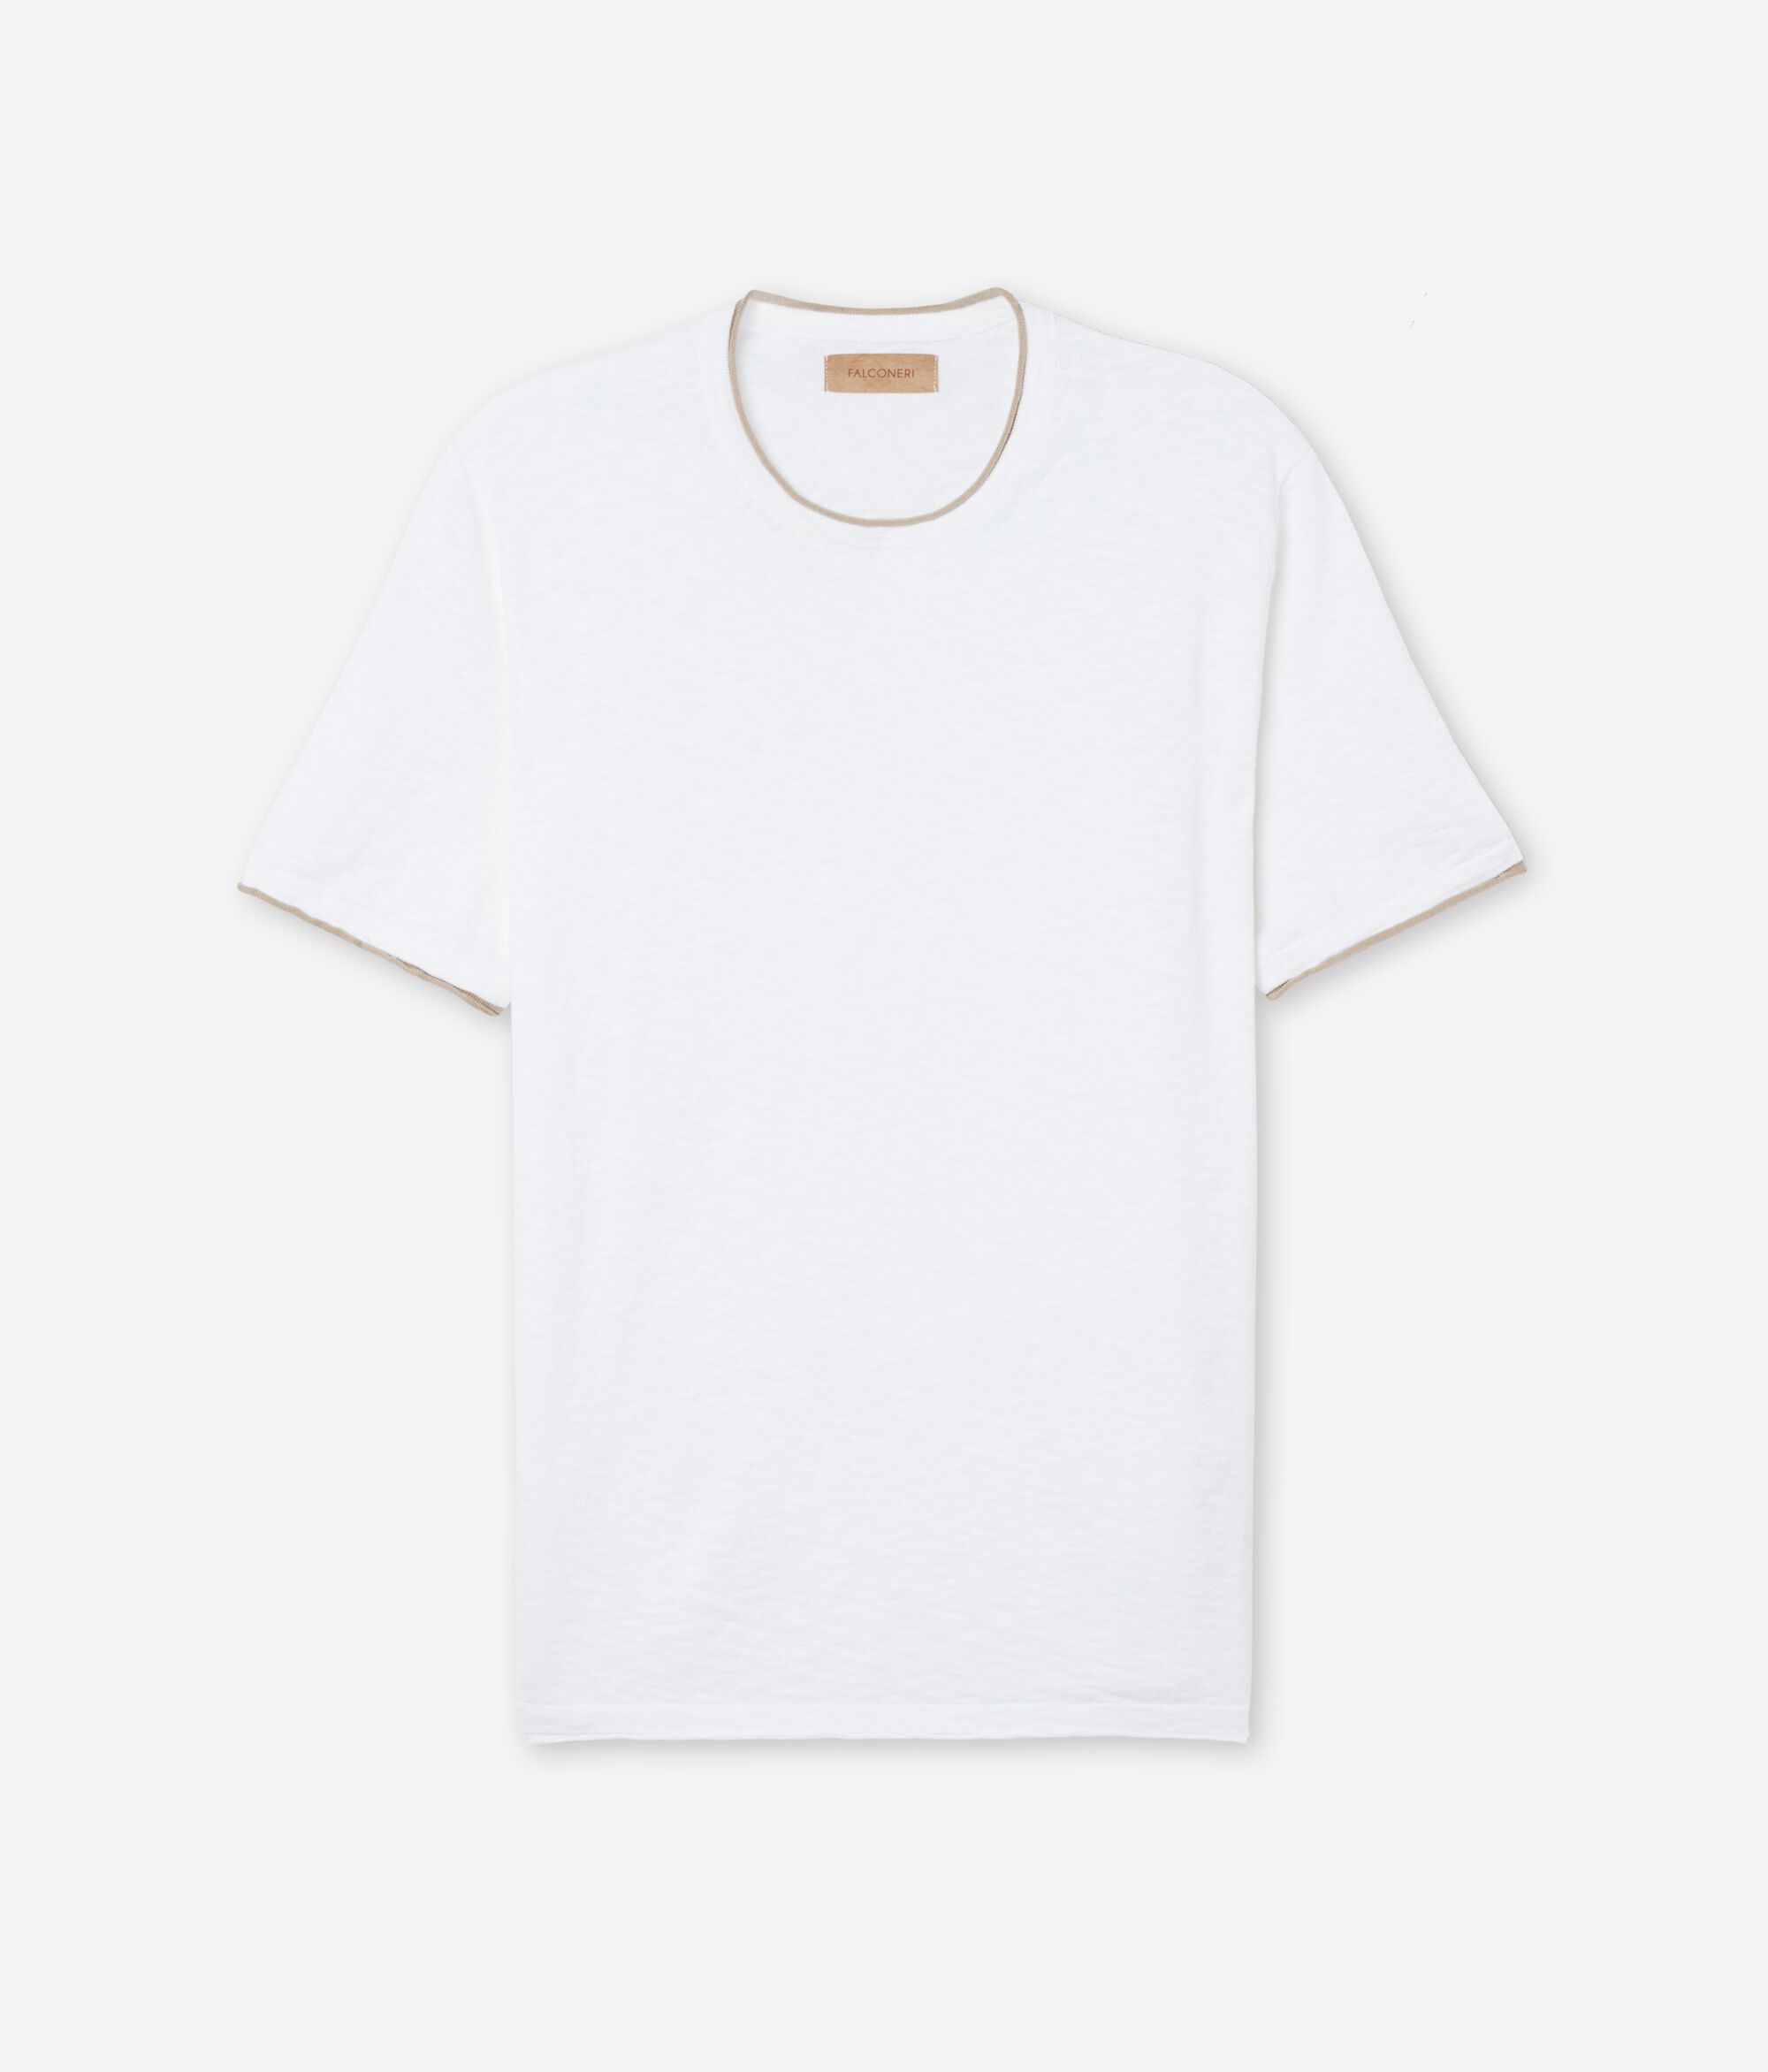 Camiseta con manga corta en algodón retorcido